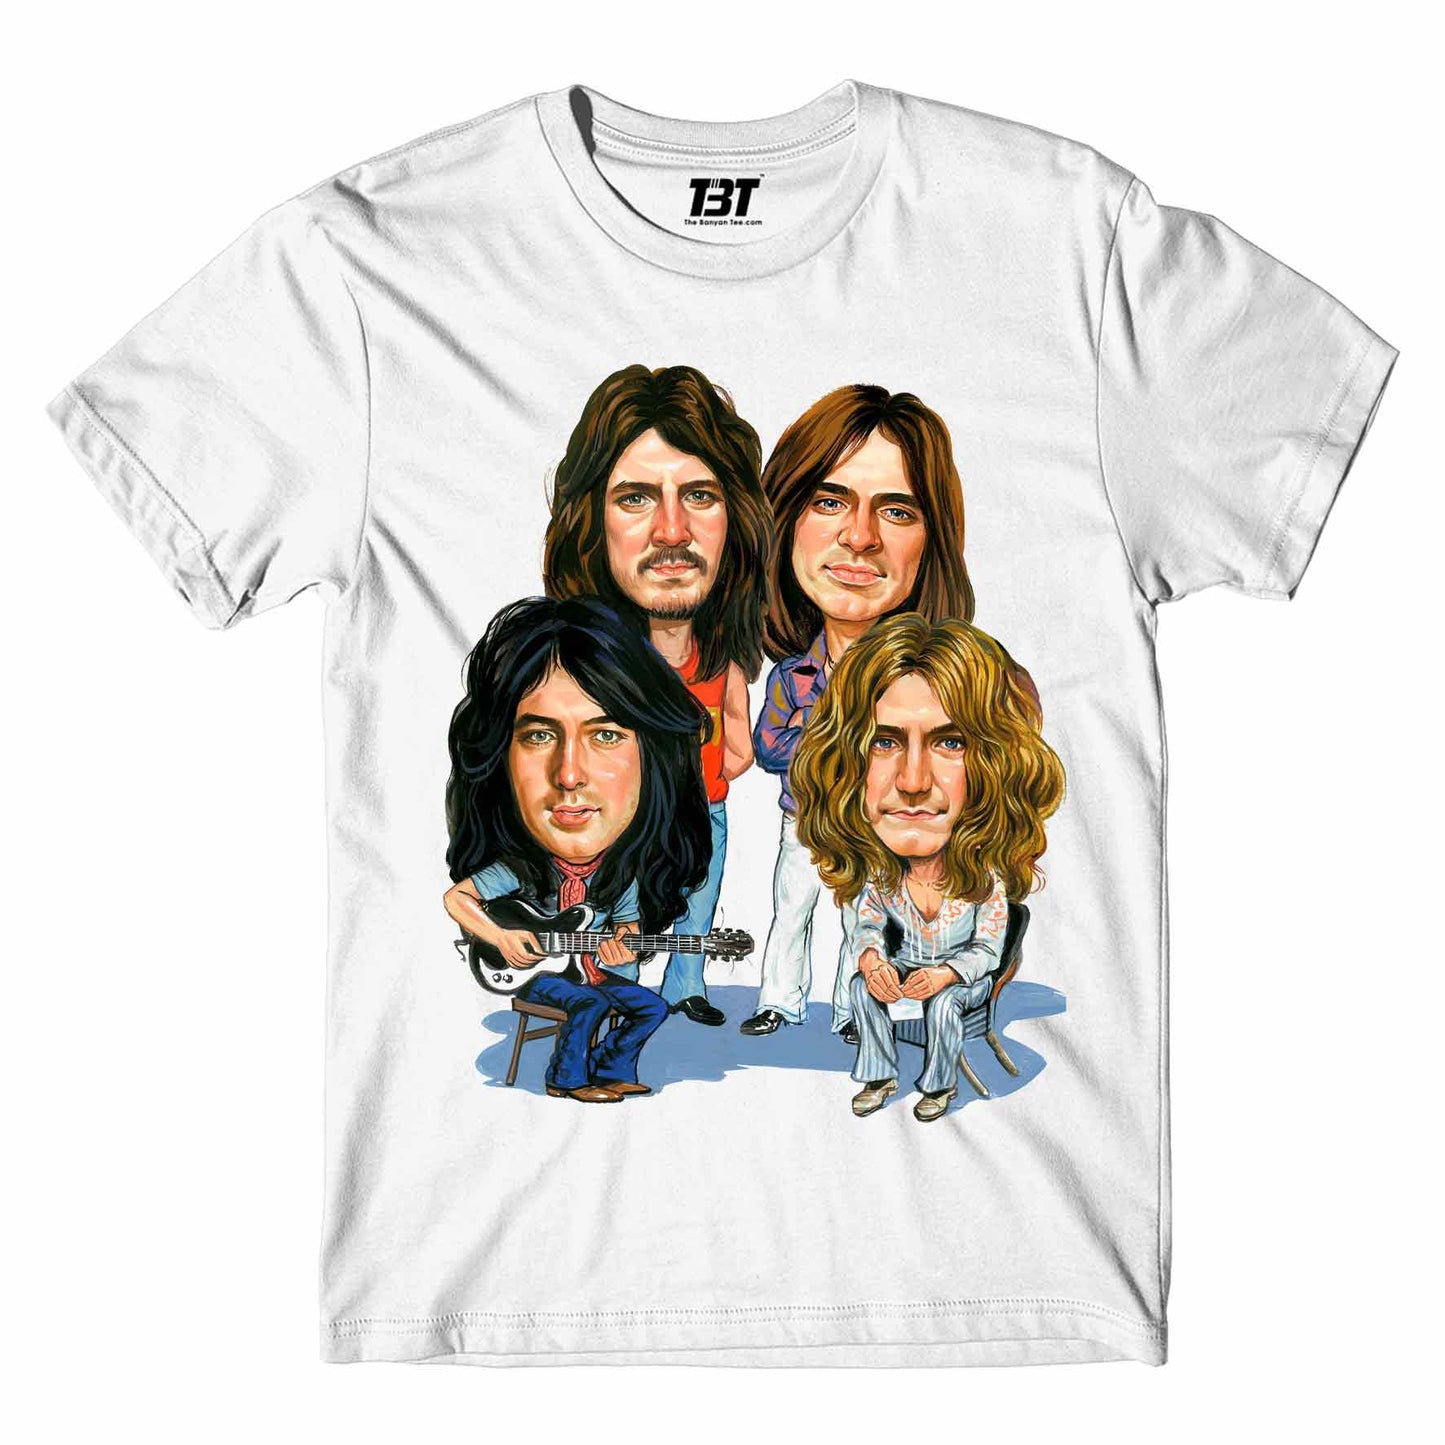 Led Zeppelin T-shirt T-shirt The Banyan Tee TBT